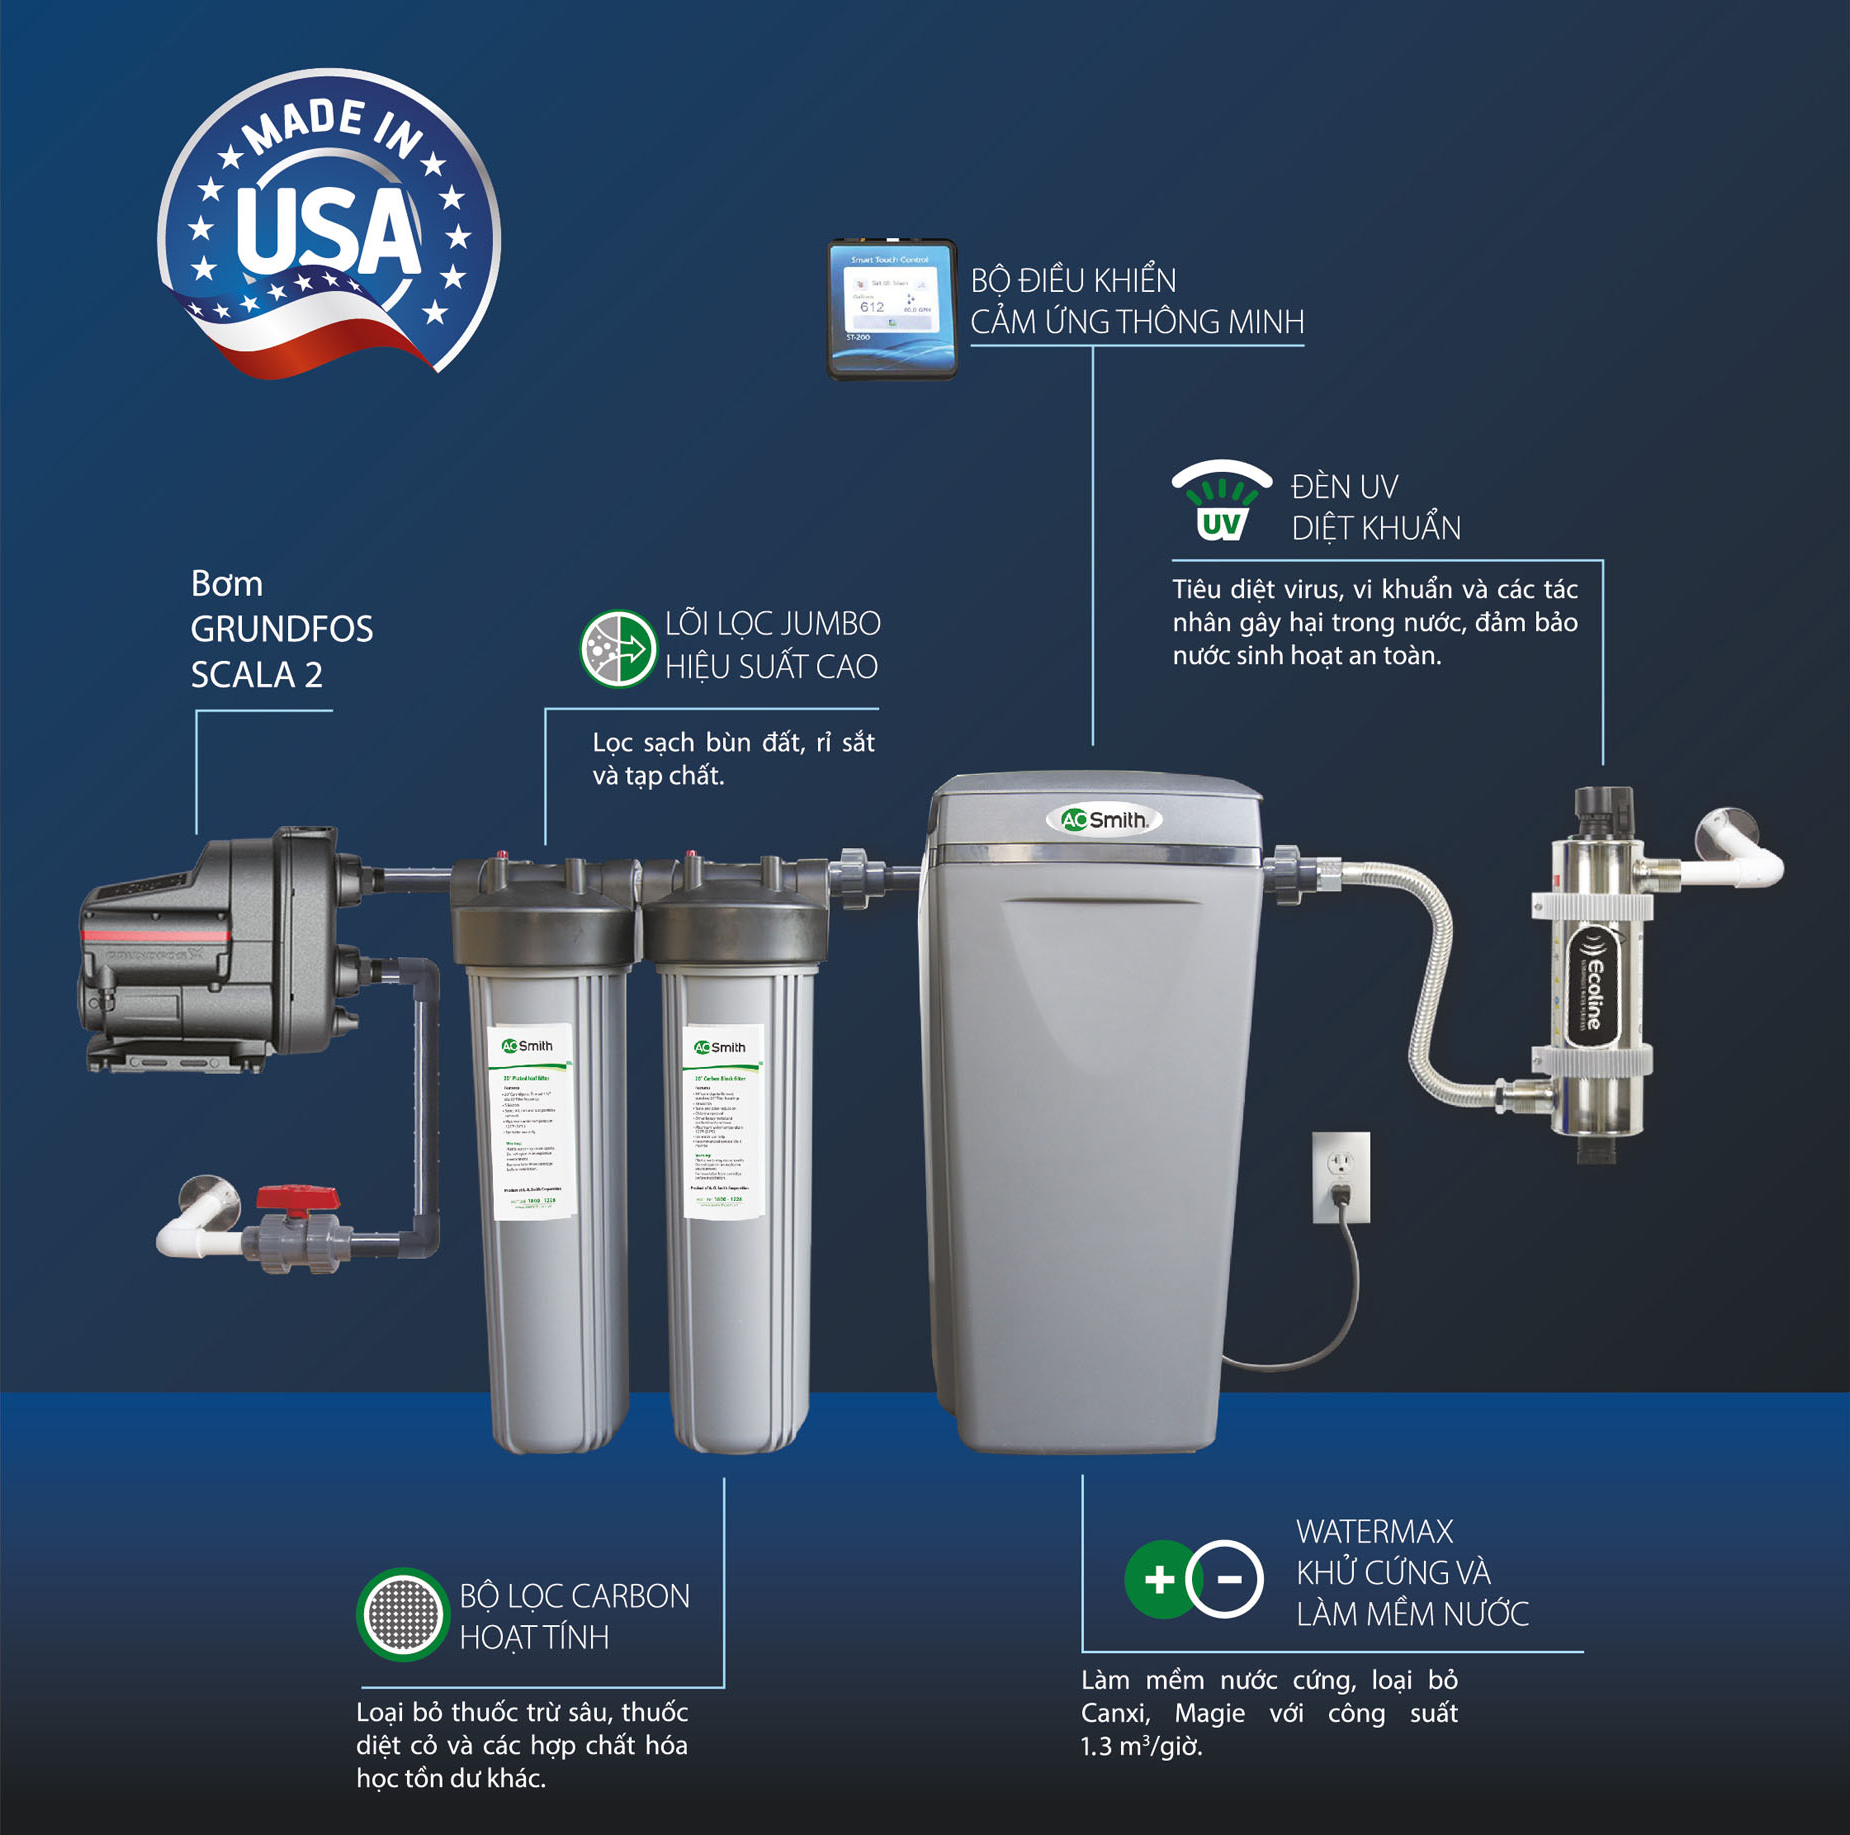 [NEW] Hệ thống lọc nước đầu nguồn AOS i97s